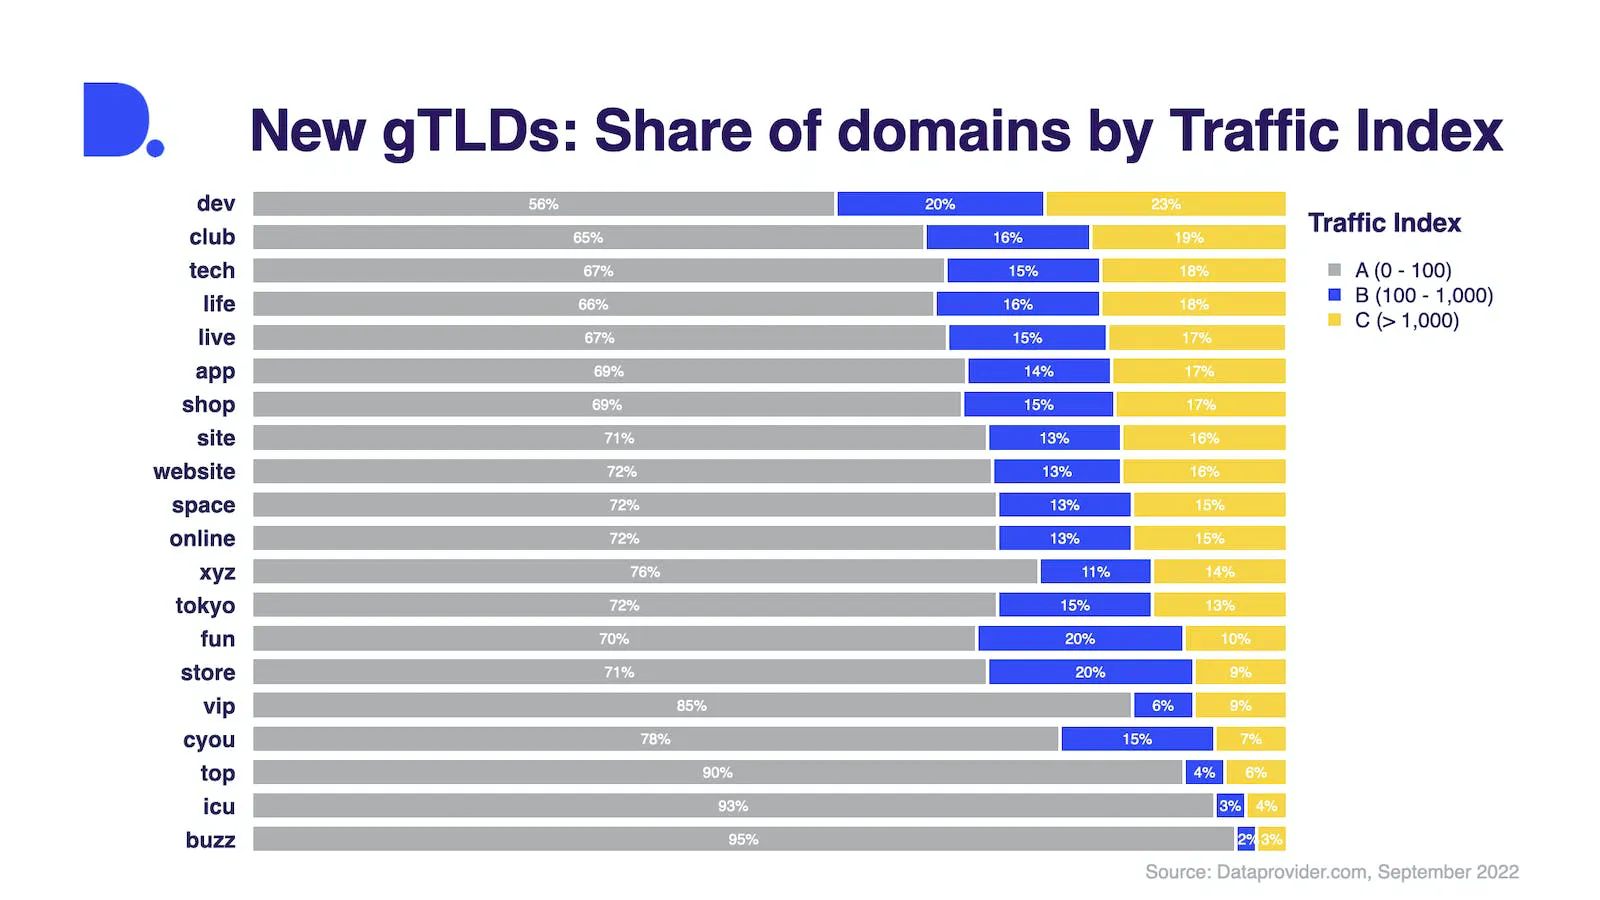 Az új gTLD domainek aránya forgalmi index szerint (A = kevés vagy semmilyen forgalom; B = mérsékelt forgalom; C = nagy forgalom)